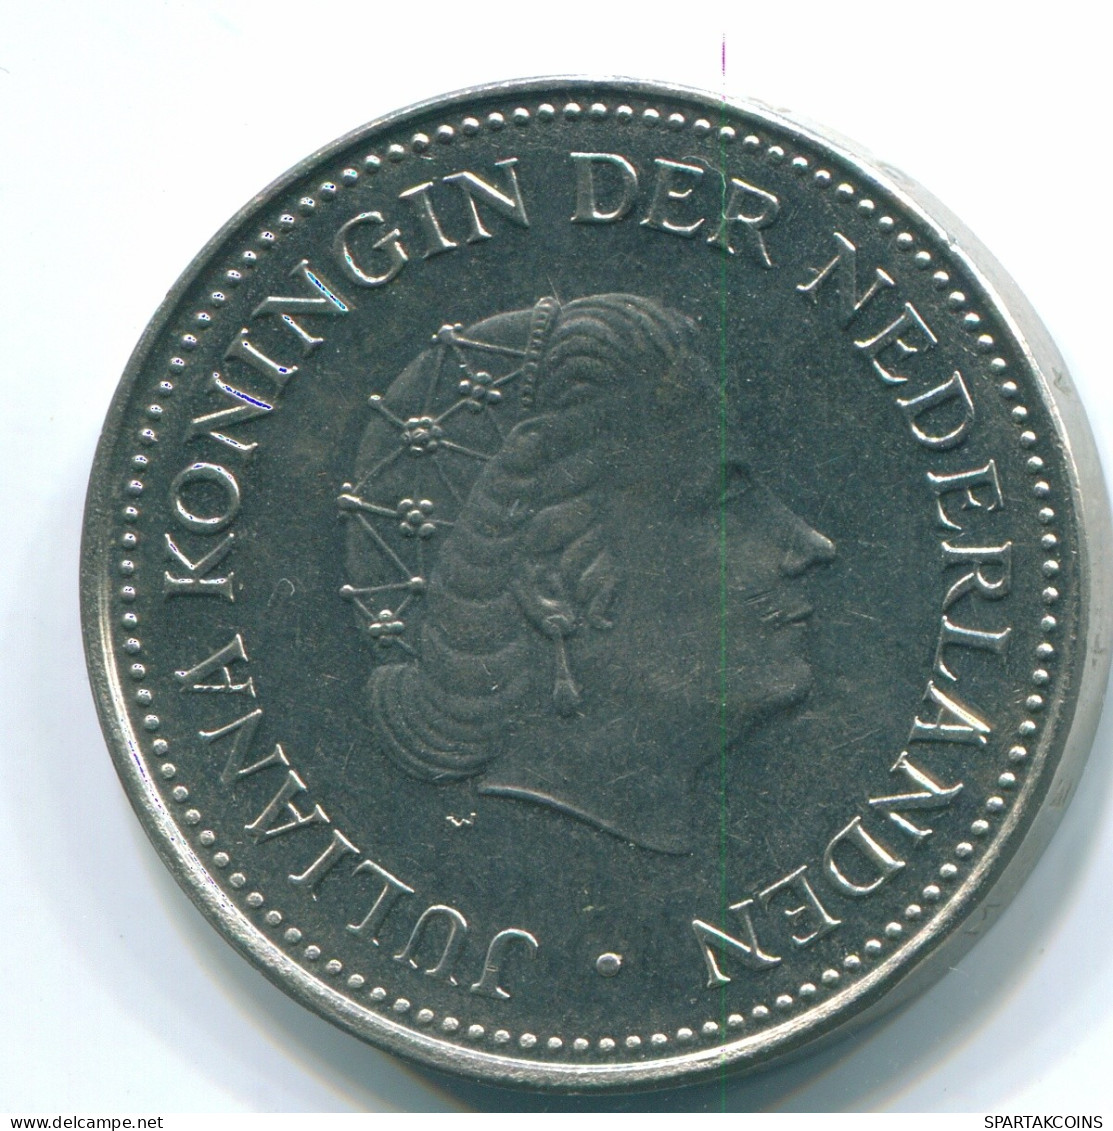 1 GULDEN 1971 NIEDERLÄNDISCHE ANTILLEN Nickel Koloniale Münze #S11977.D.A - Niederländische Antillen